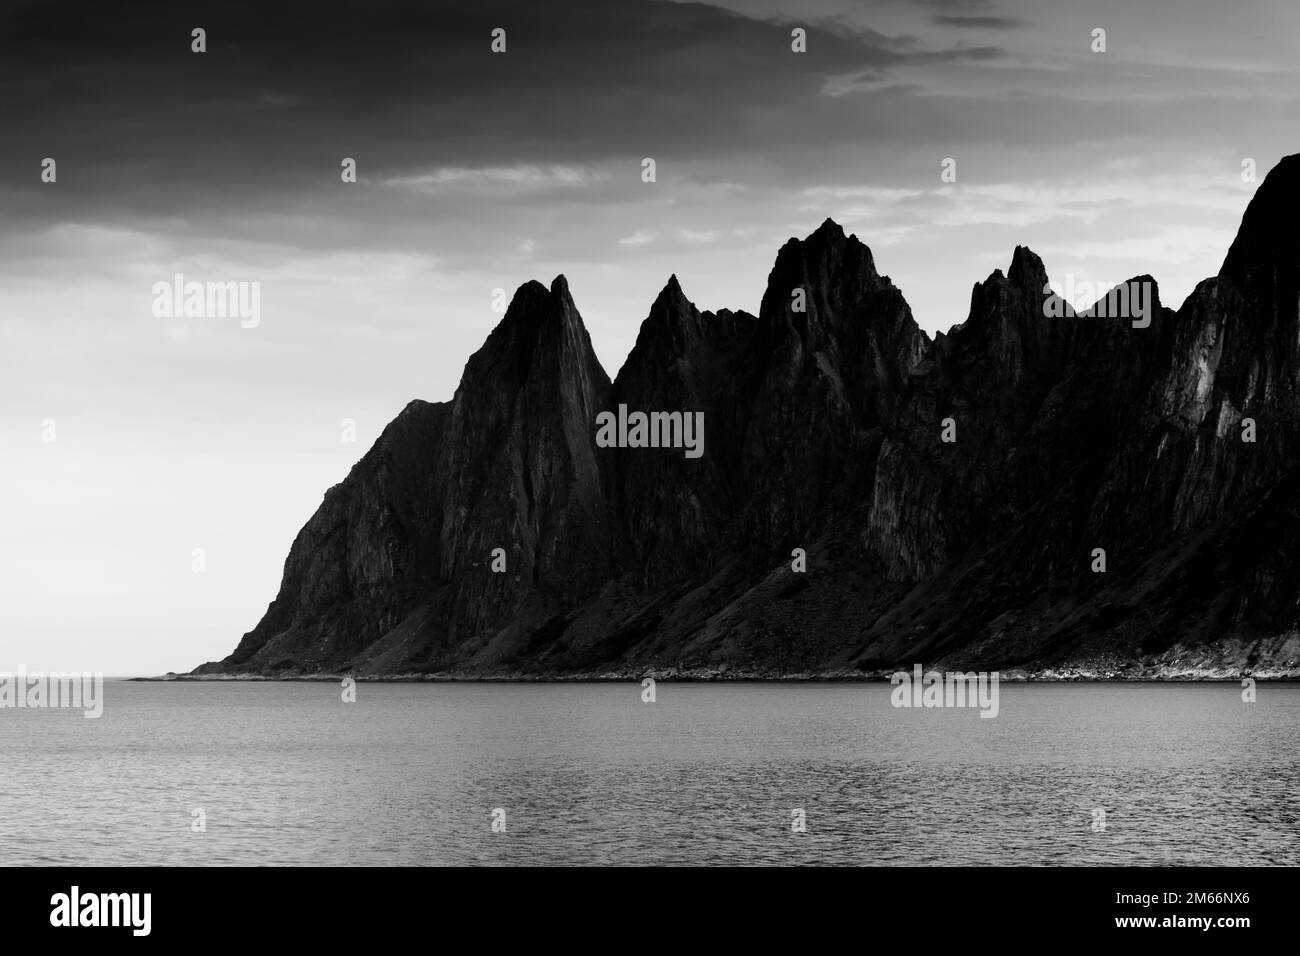 Le Tungeneset (dents du diable), montagnes au-dessus de l'océan dans l'île de Senja, Norvège Banque D'Images